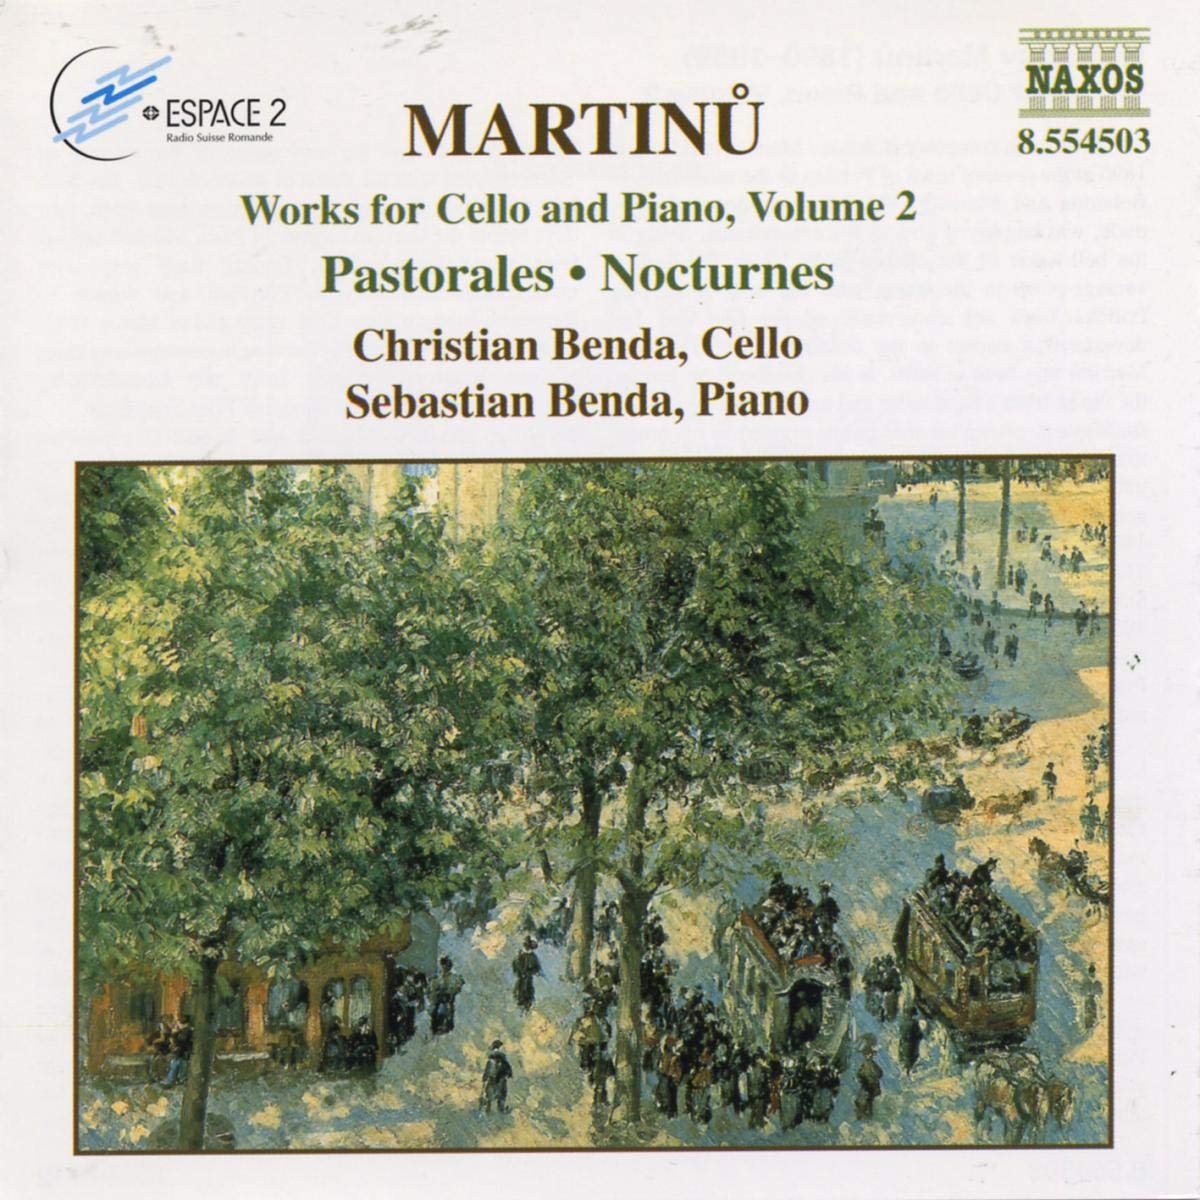 MARTINU: Works for Cello vol. 2